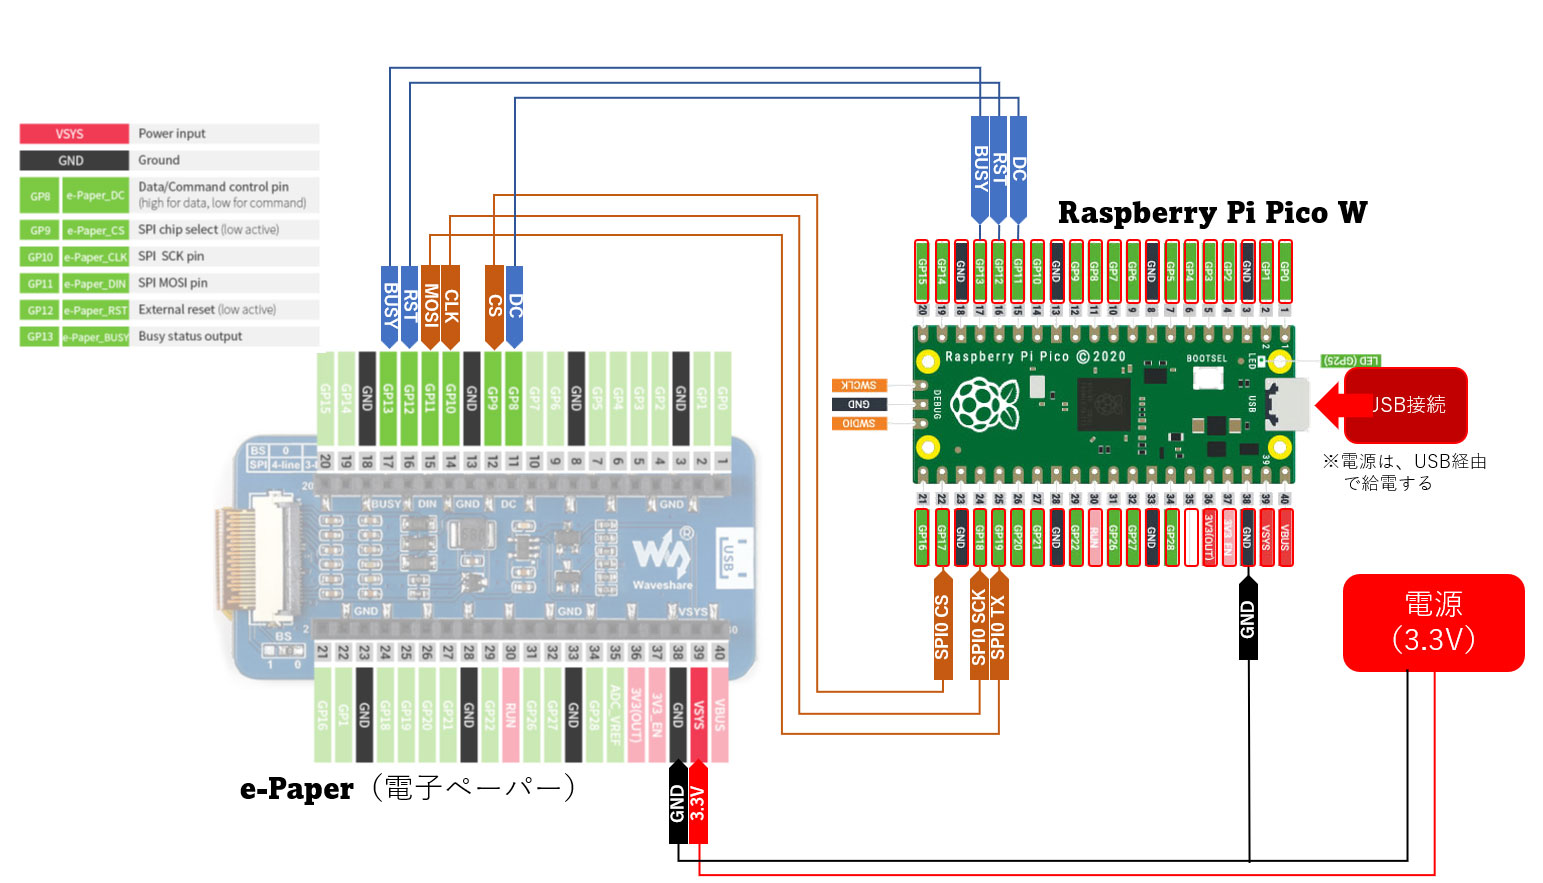 e-Paper と Raspberry Pi Pico W の接続